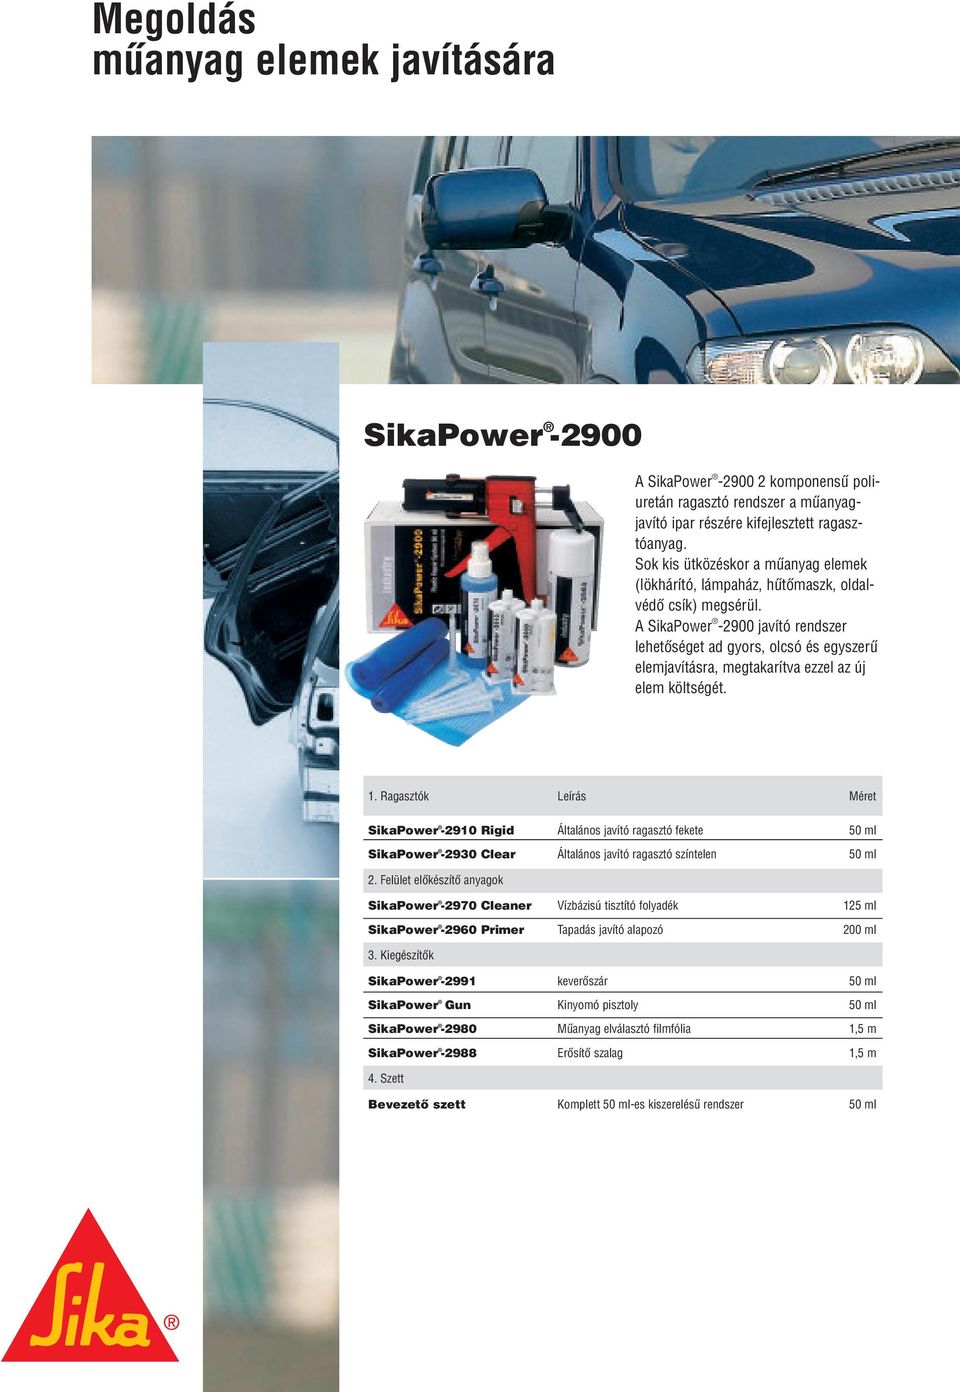 A SikaPower -2900 javító rendszer lehetôséget ad gyors, olcsó és egyszerû elemjavításra, megtakarítva ezzel az új elem költségét. 1.